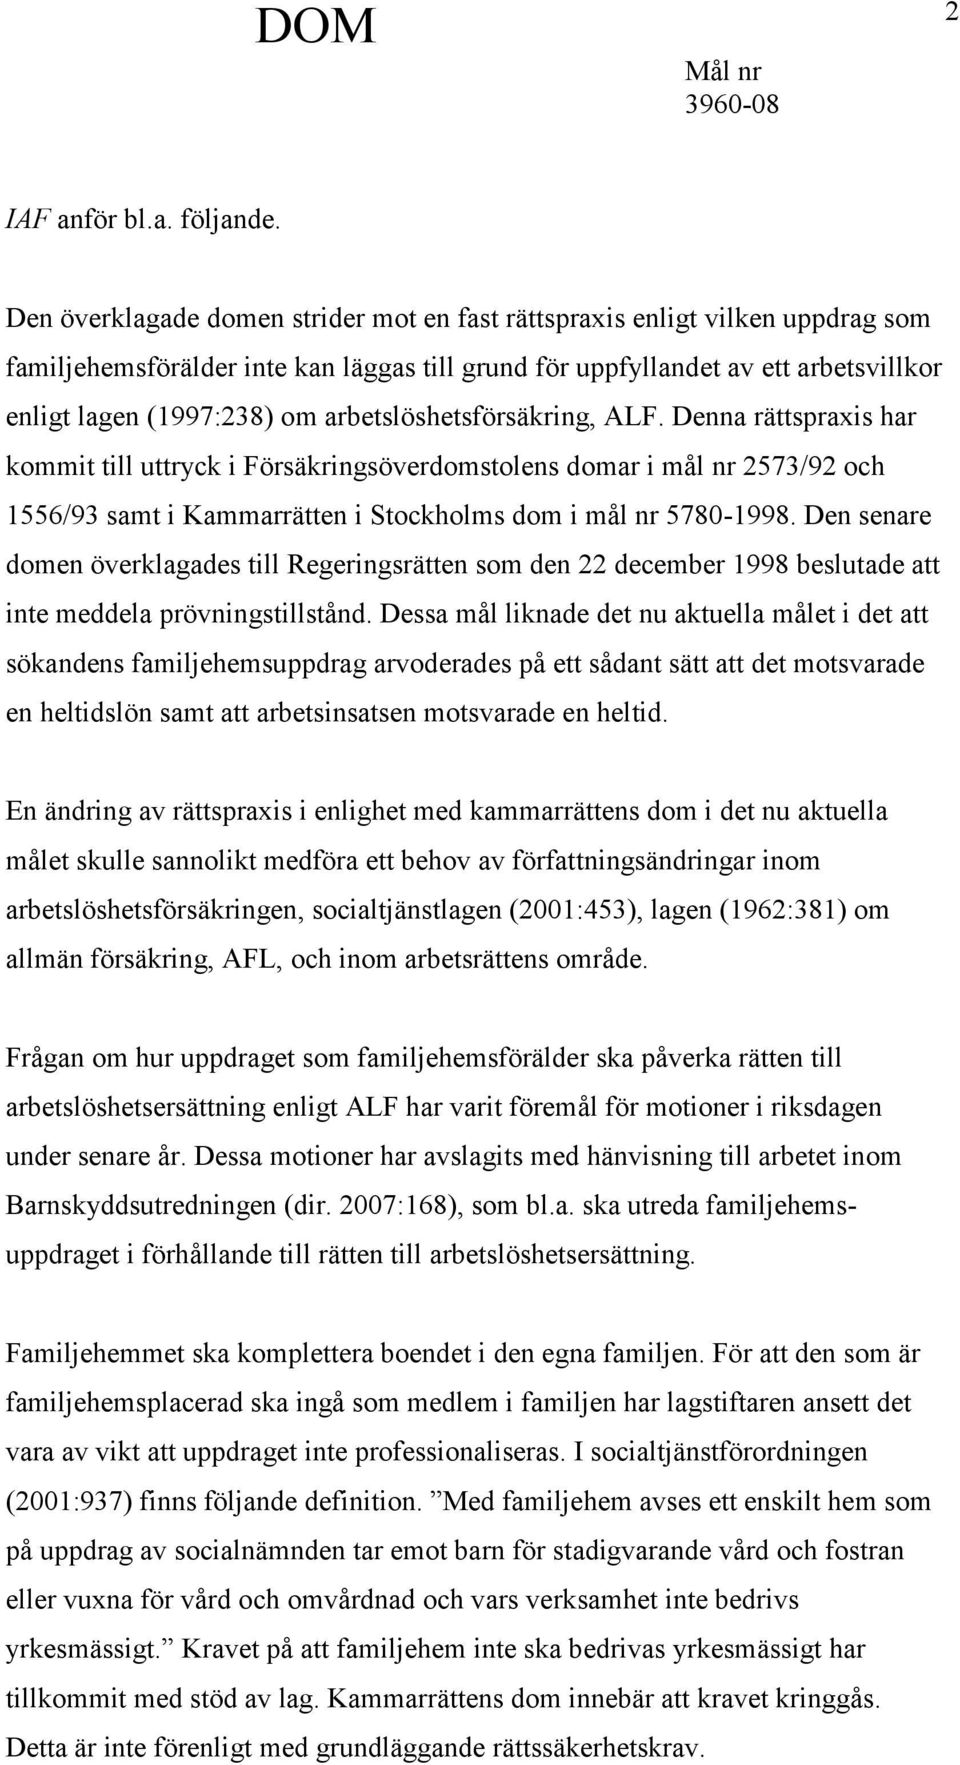 arbetslöshetsförsäkring, ALF. Denna rättspraxis har kommit till uttryck i Försäkringsöverdomstolens domar i mål nr 2573/92 och 1556/93 samt i Kammarrätten i Stockholms dom i mål nr 5780-1998.